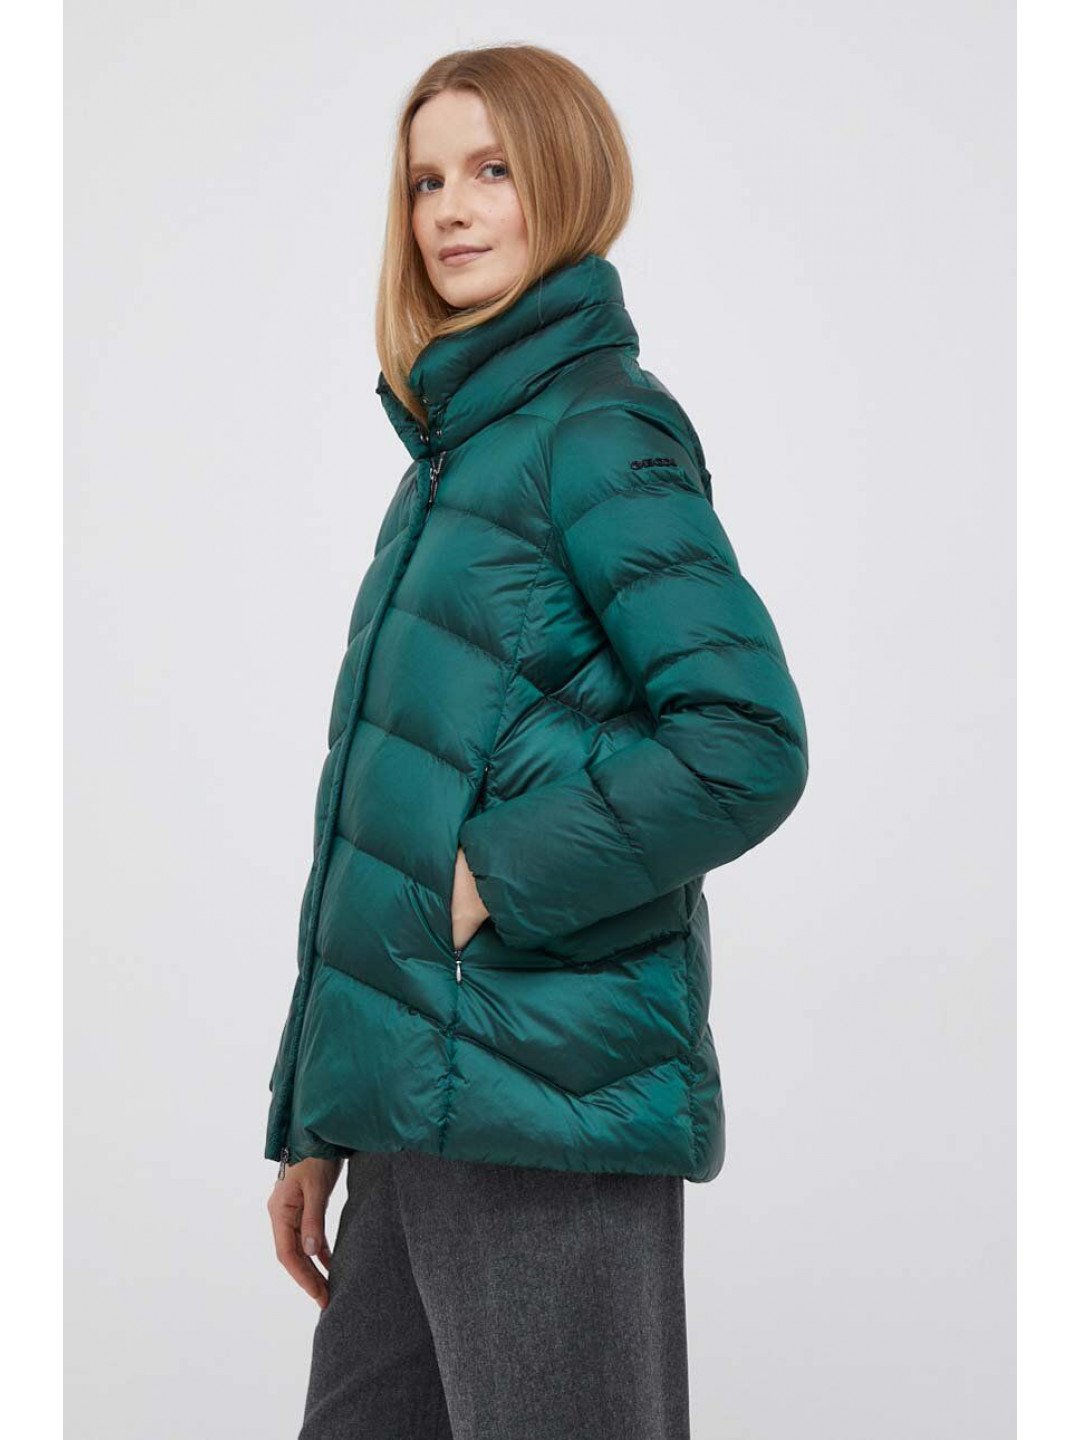 Péřová bunda Geox ADRYA dámská zelená barva zimní